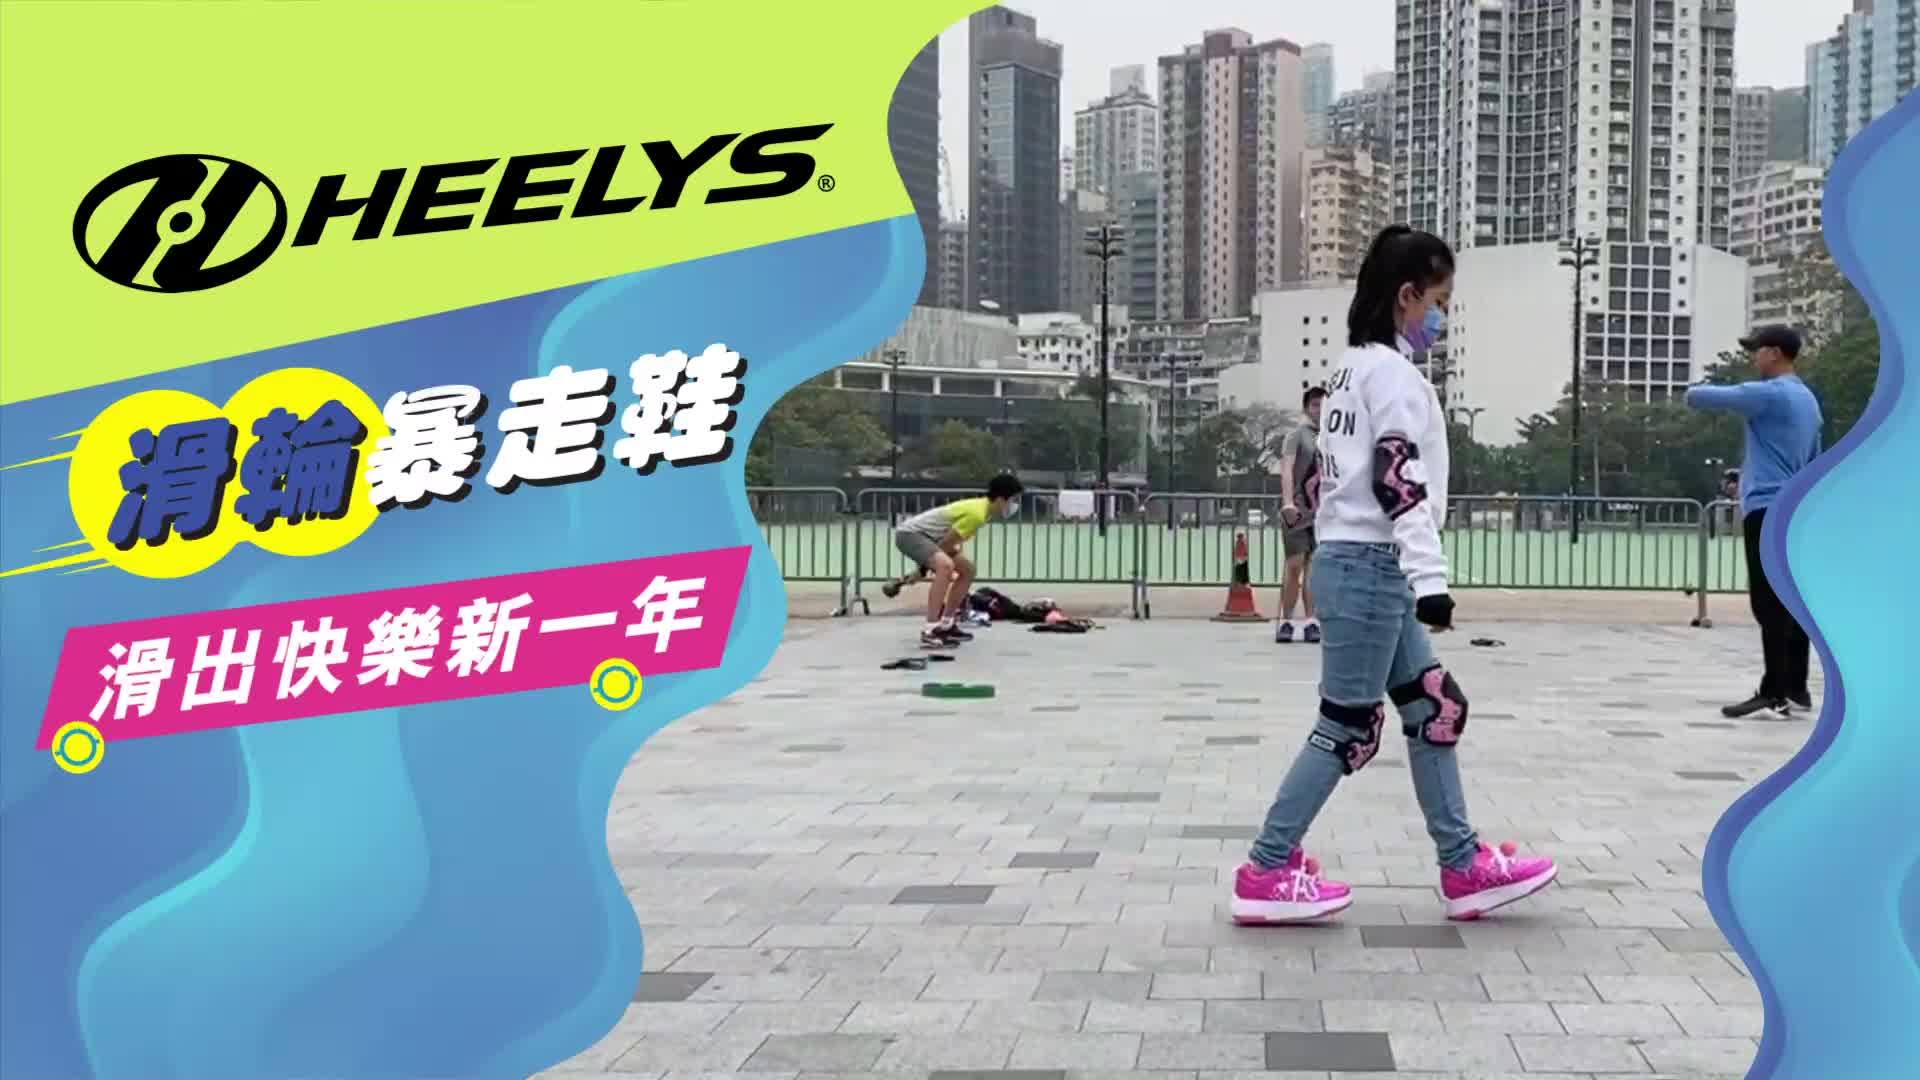 【滑出快樂新一年】Heelys 暴走鞋最新款式登場 